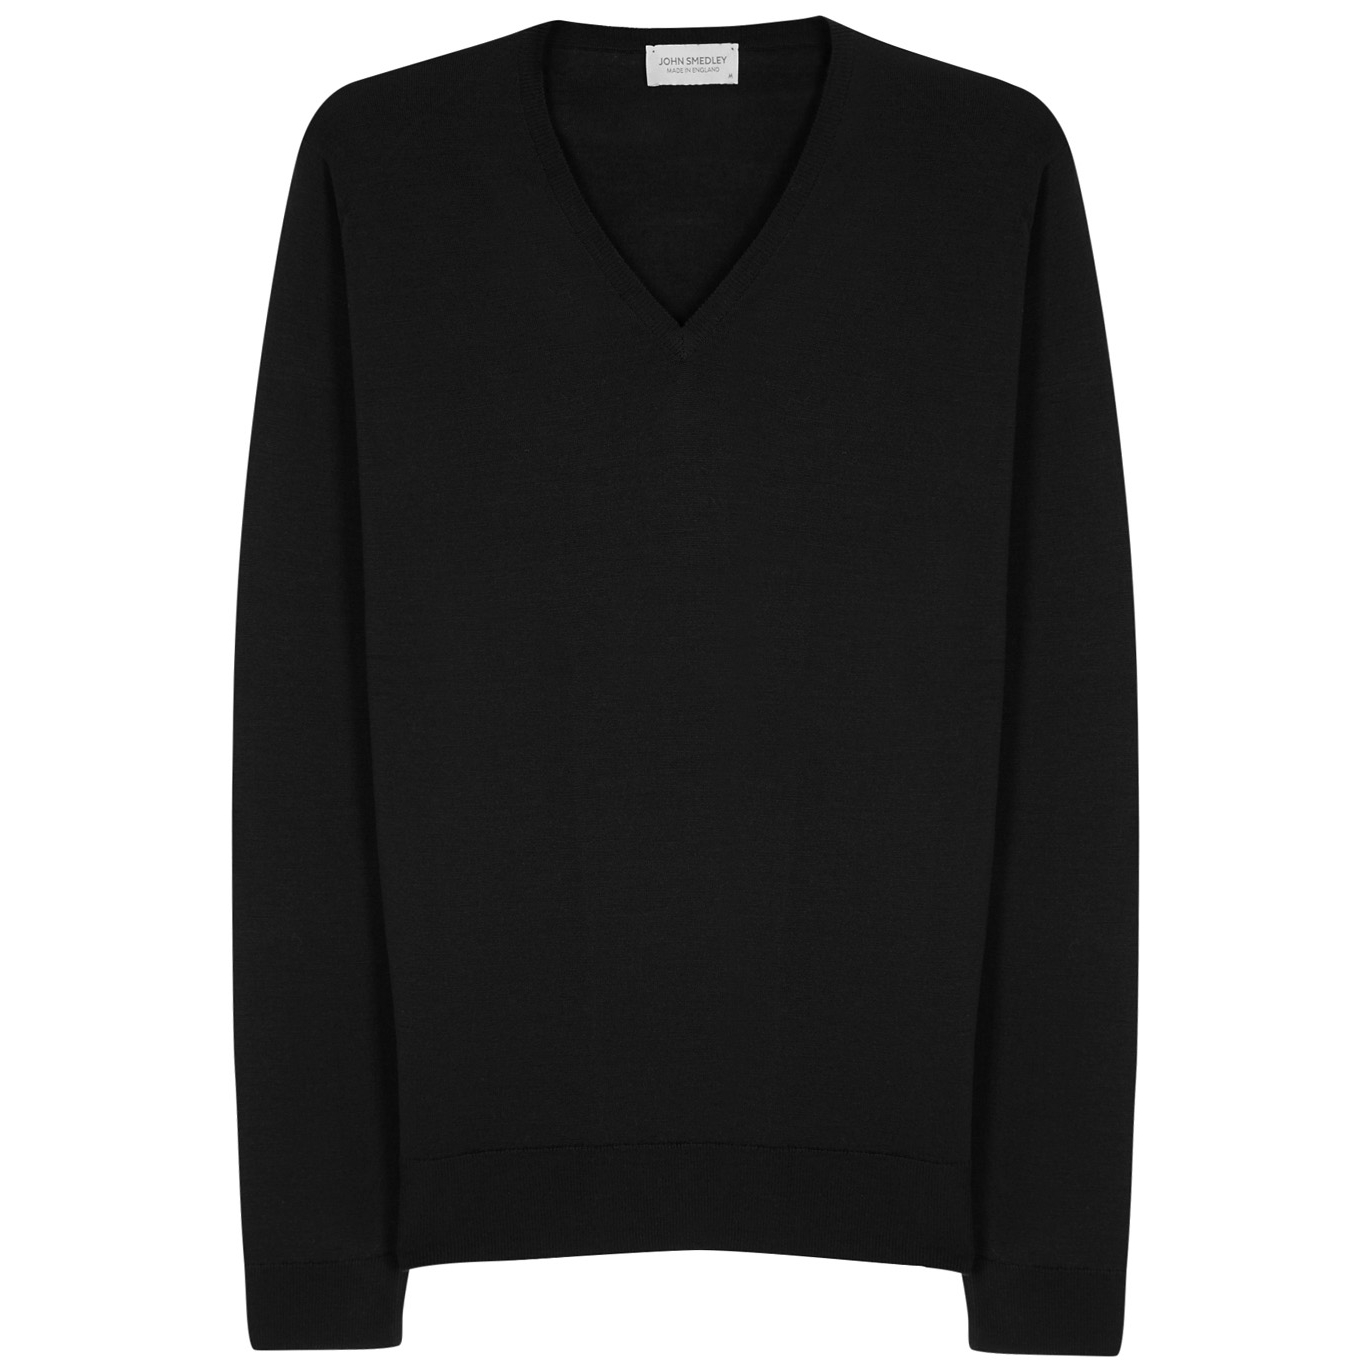 John Smedley Blenheim Black Fine-knit Wool Jumper - L